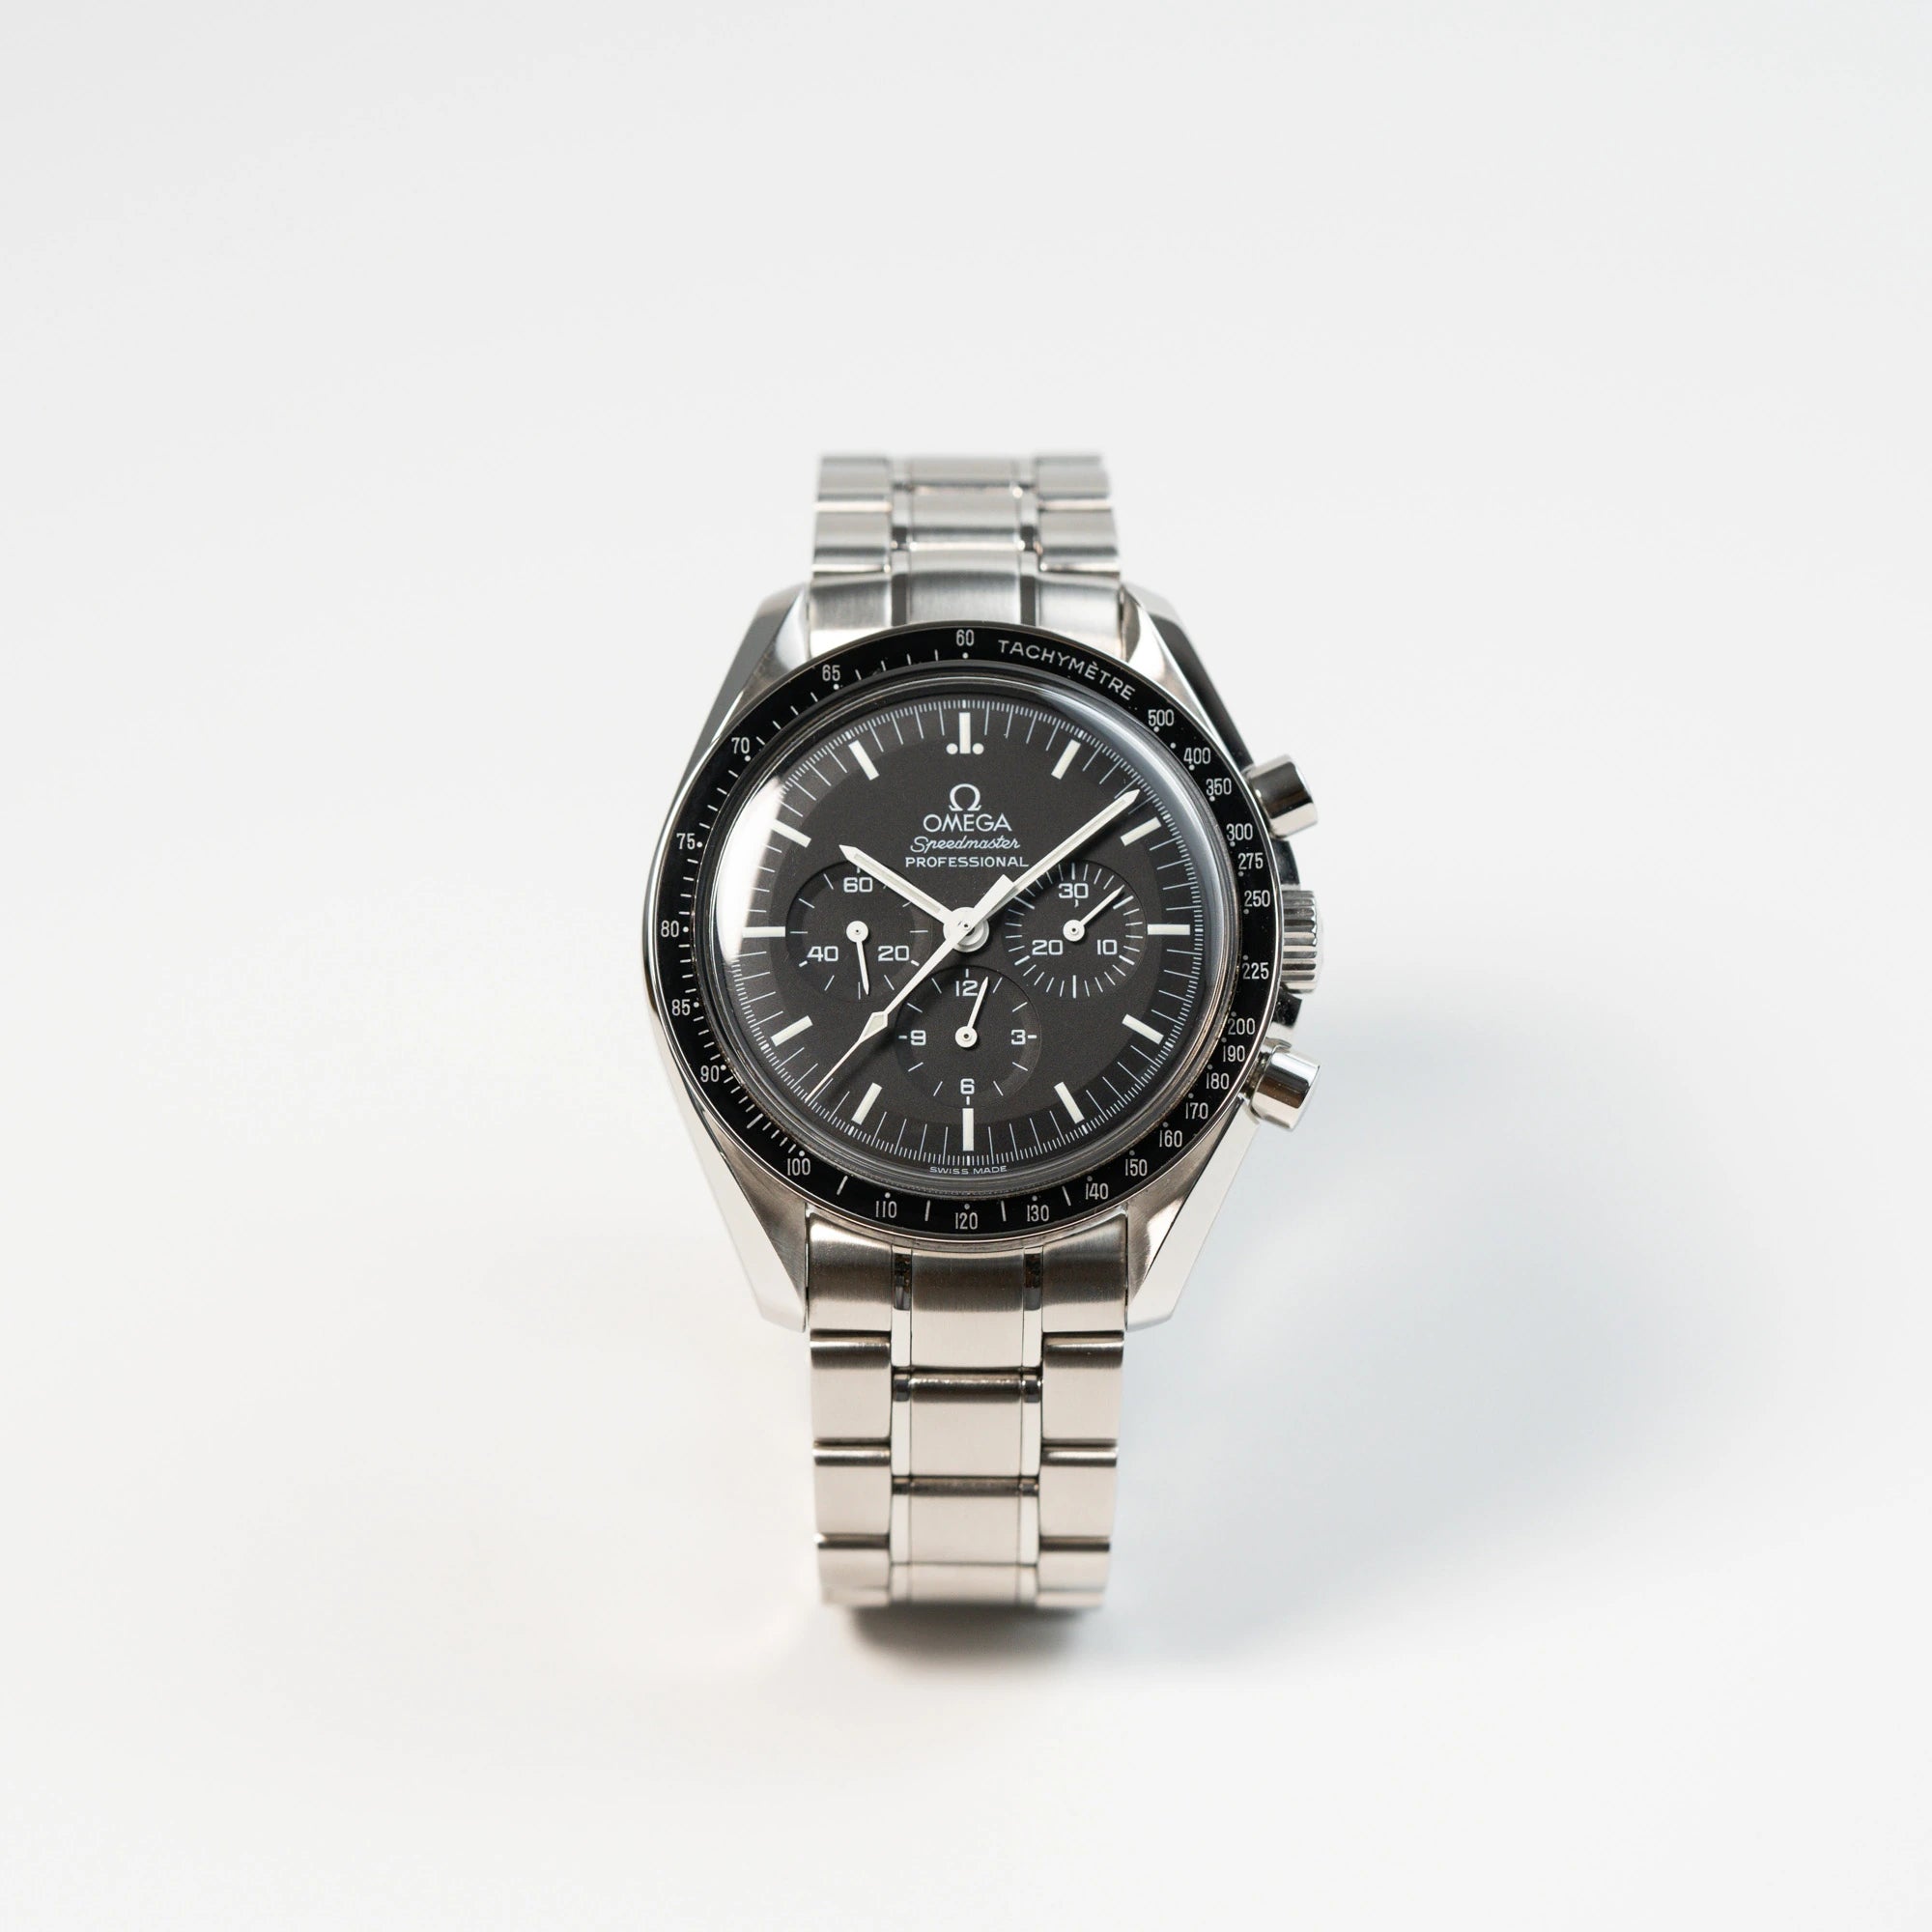 Frontale Ansicht der Omega Speedmaster Moonwatch Professional mit der Referenz 357.50.00 mit dem klassischen schwarzen Zifferblatt